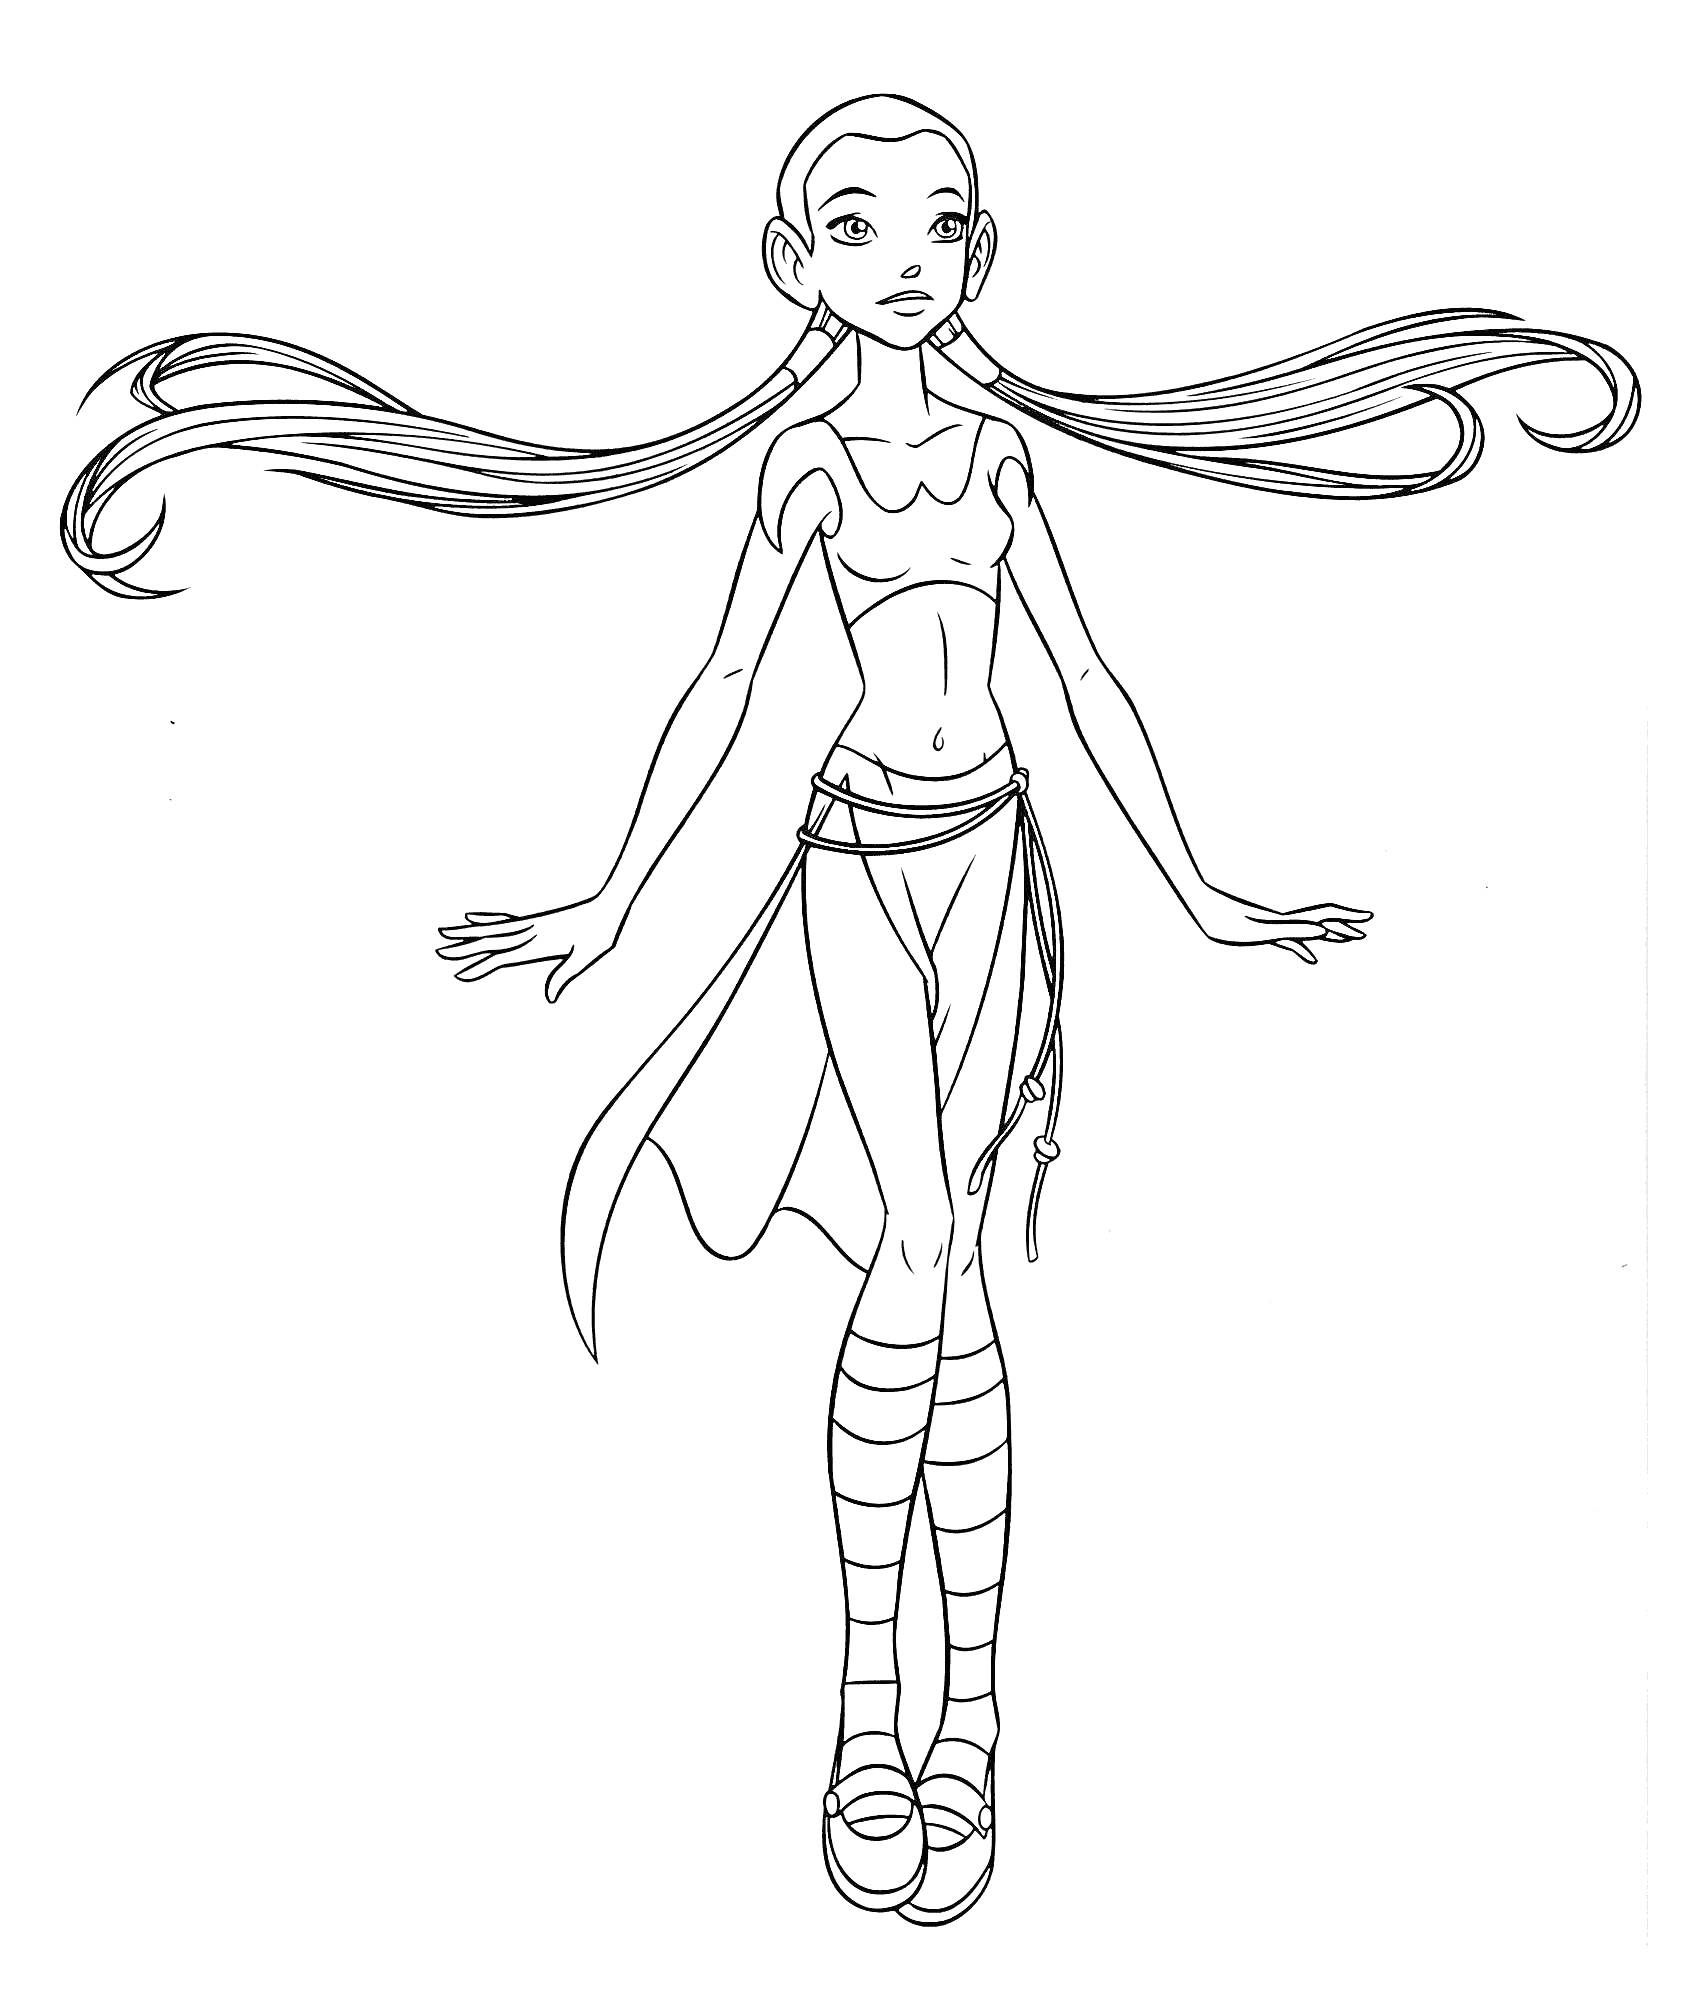 Раскраска Девочка-волшебница с длинными волосами, в топе и юбке, стоящая на ногах с вытянутыми рукам